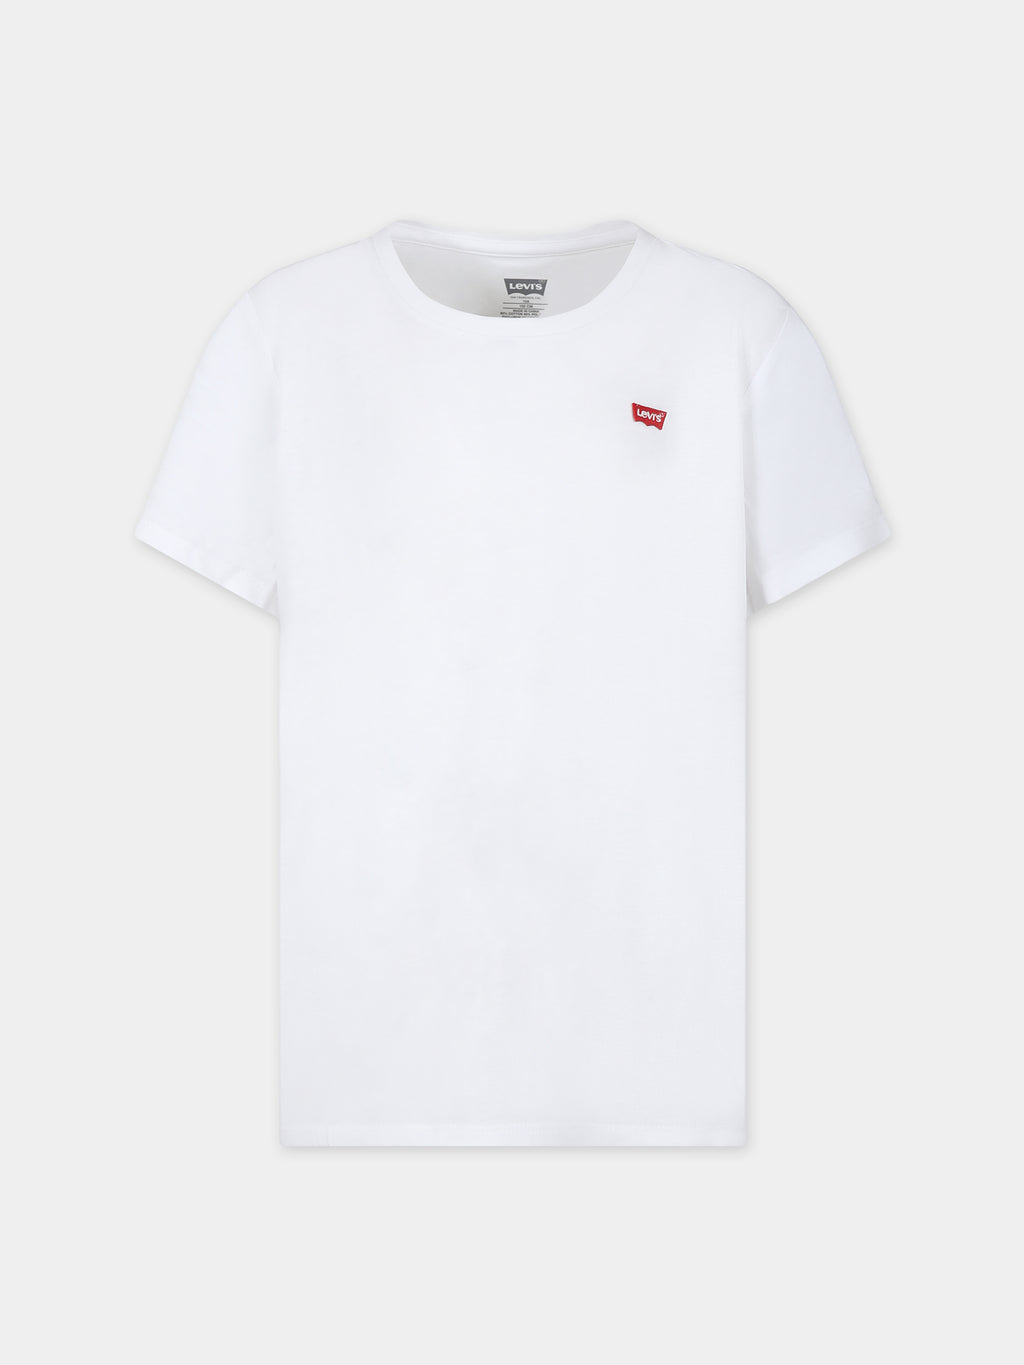 T-shirt blanc pour enfants avec logo